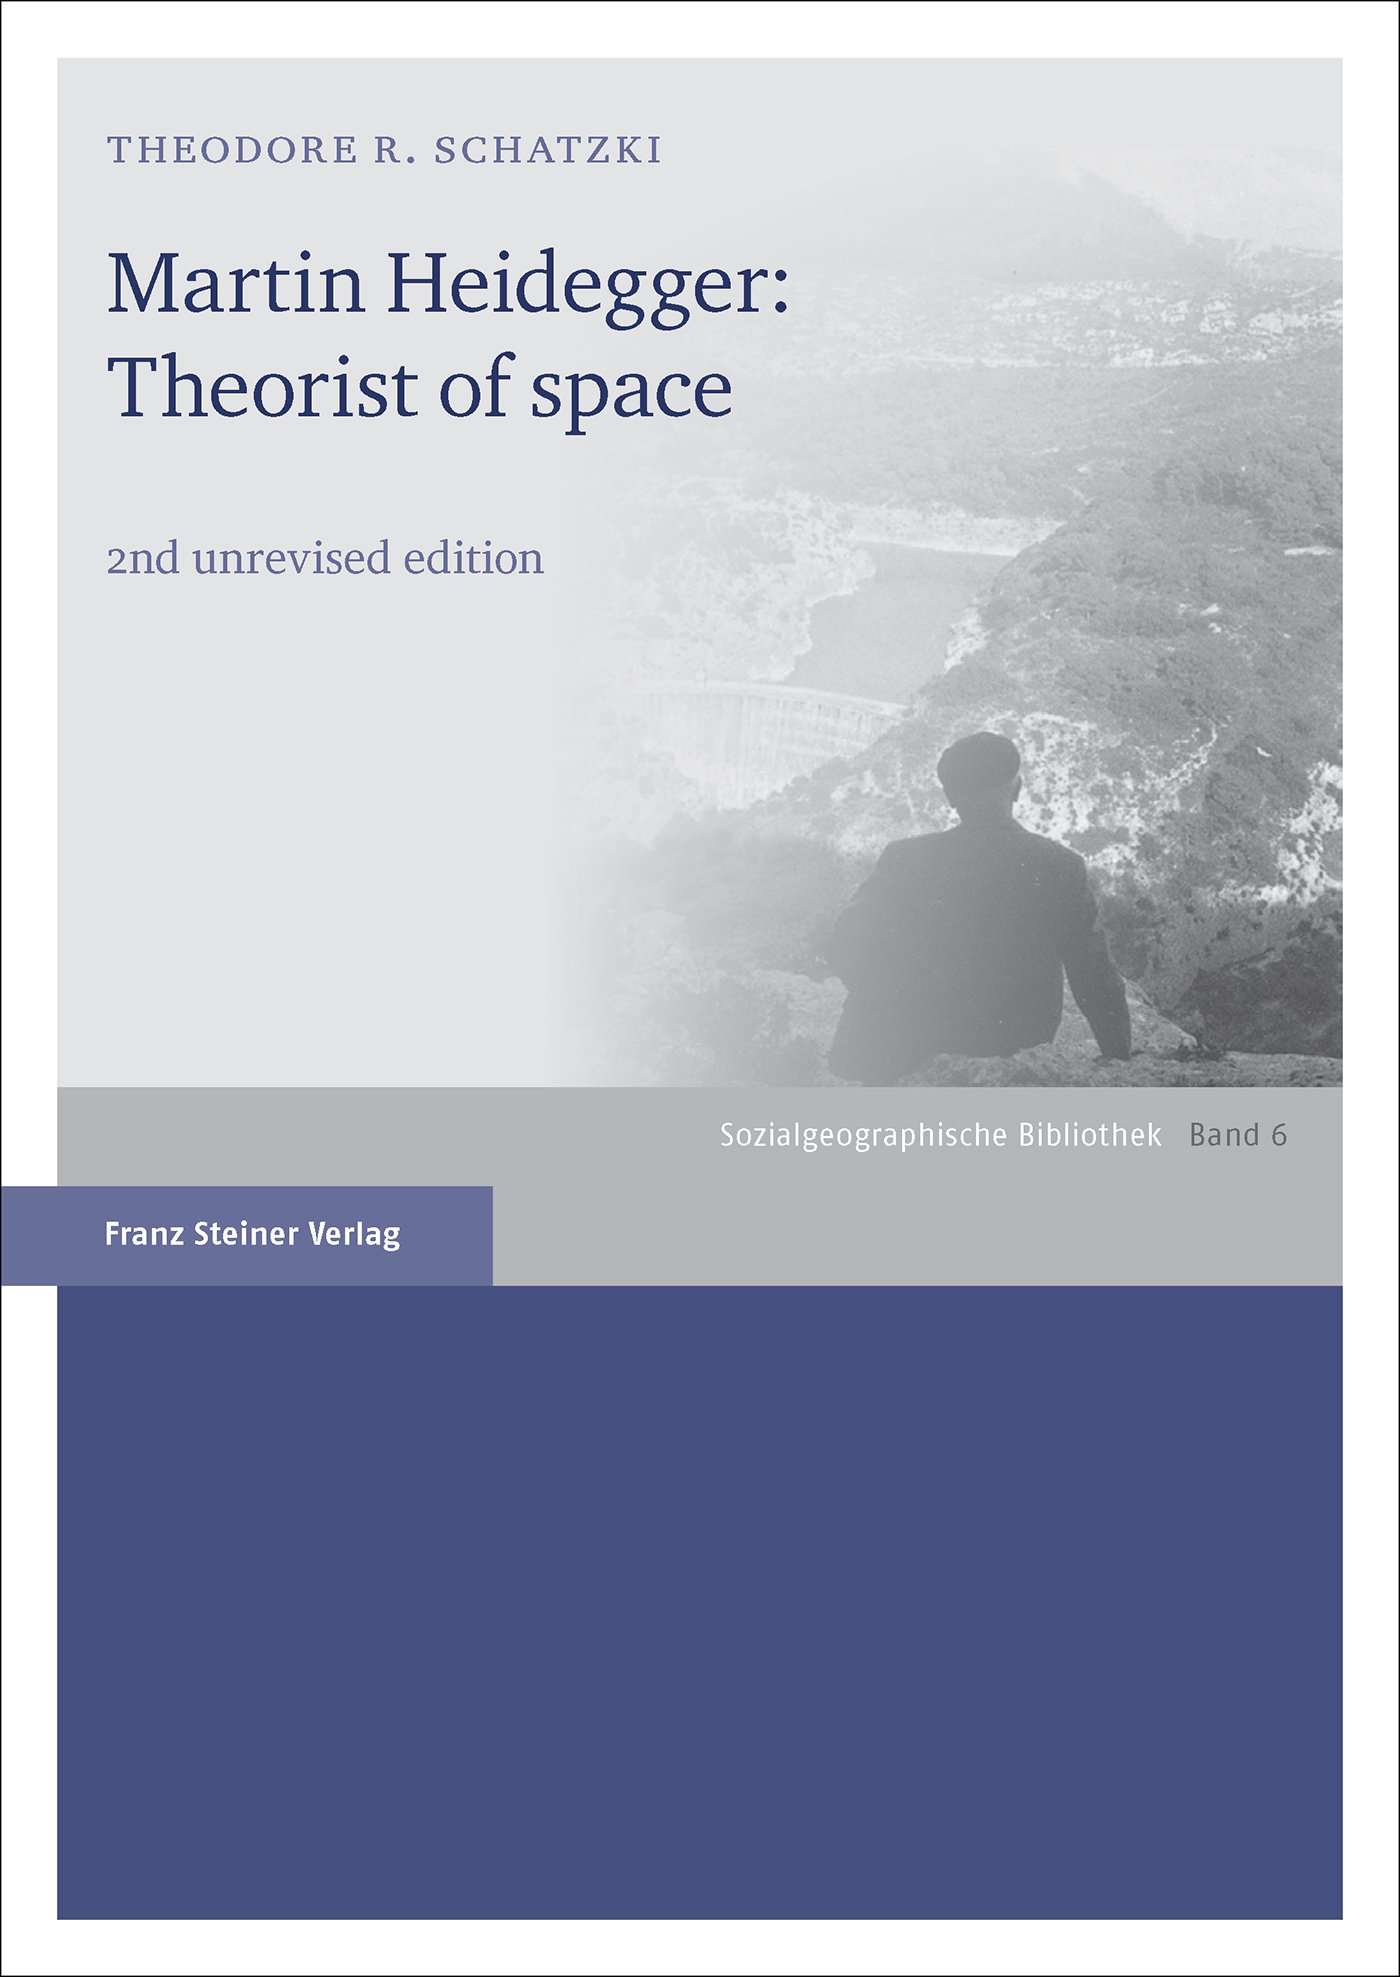 Martin Heidegger: Theorist of space